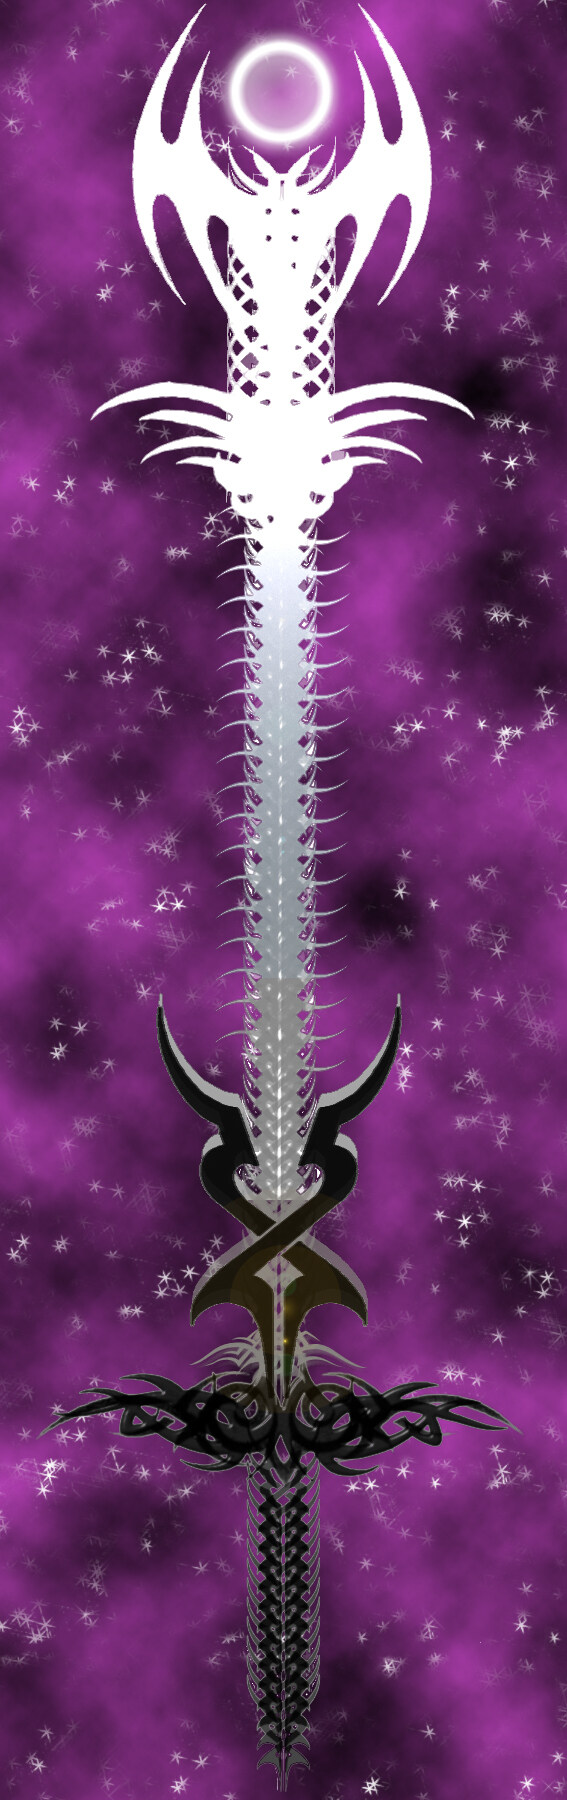 暗夜之剑